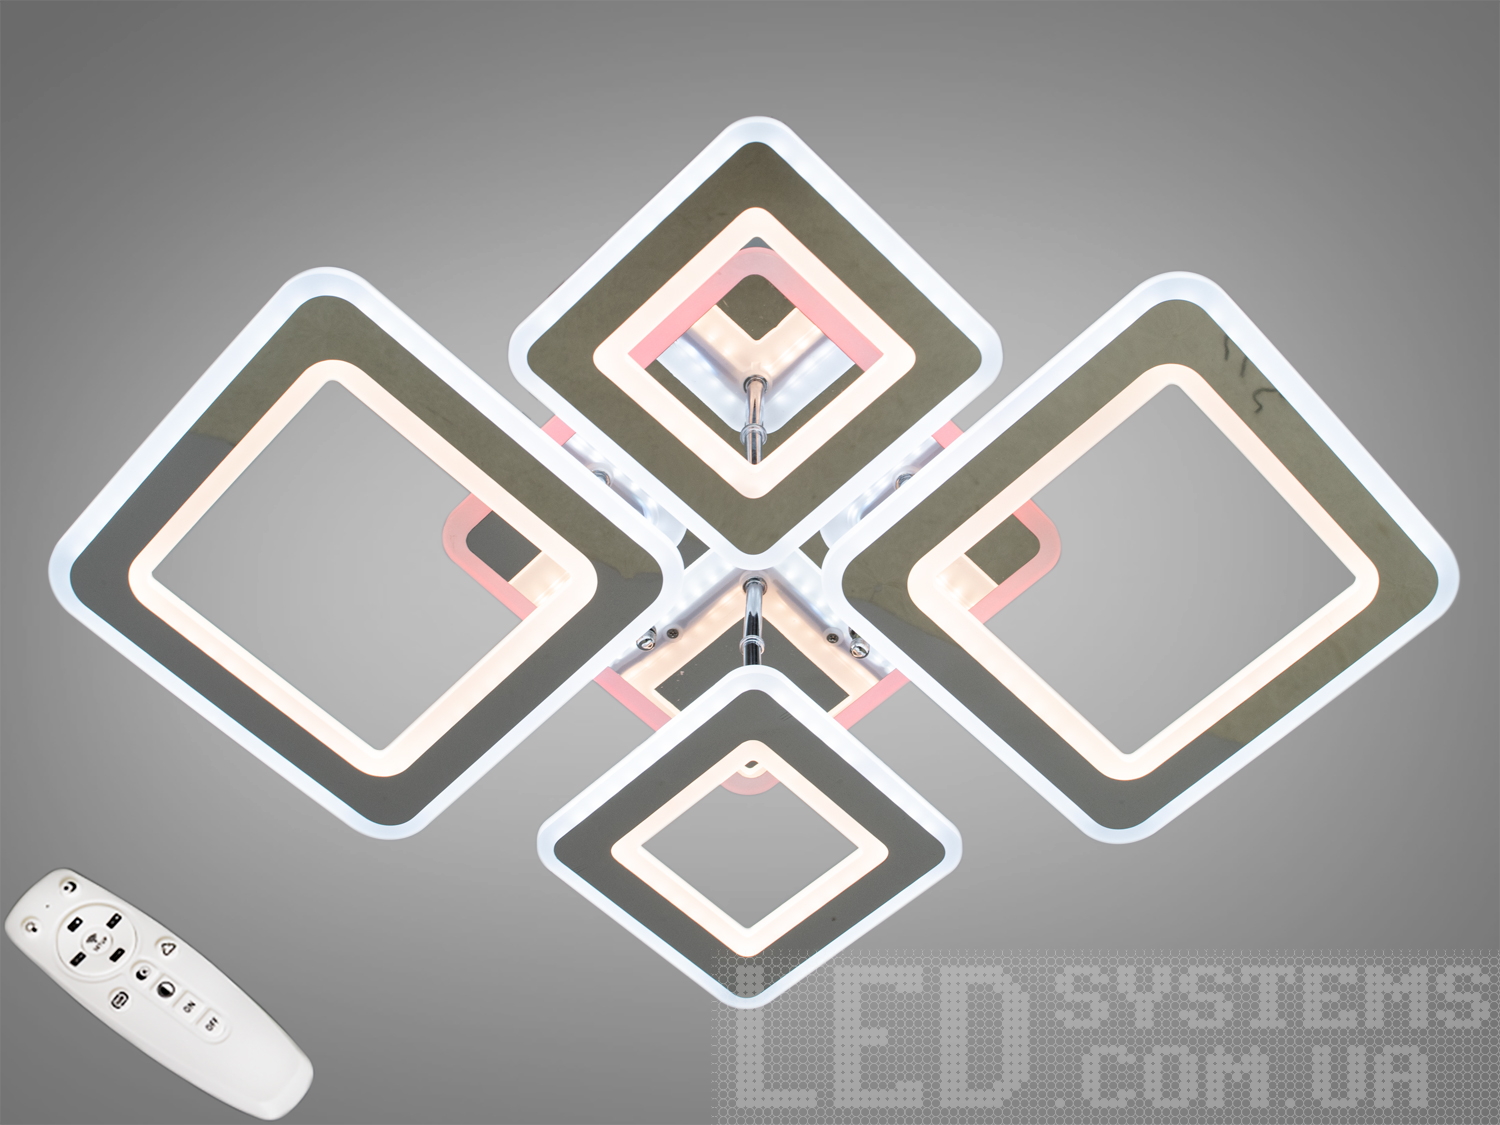 Перед Вами зовсім нове і незвичайне виконання плафонів, що обрамляють LED лампи. Така люстра запросто підійде під будь-який інтер'єр - класичний, сучасний і навіть у стилі «хай-тек».
Люстра оснащена блоком живлення світлодіодних ламп, пультовим керуванням, порежимним включенням.